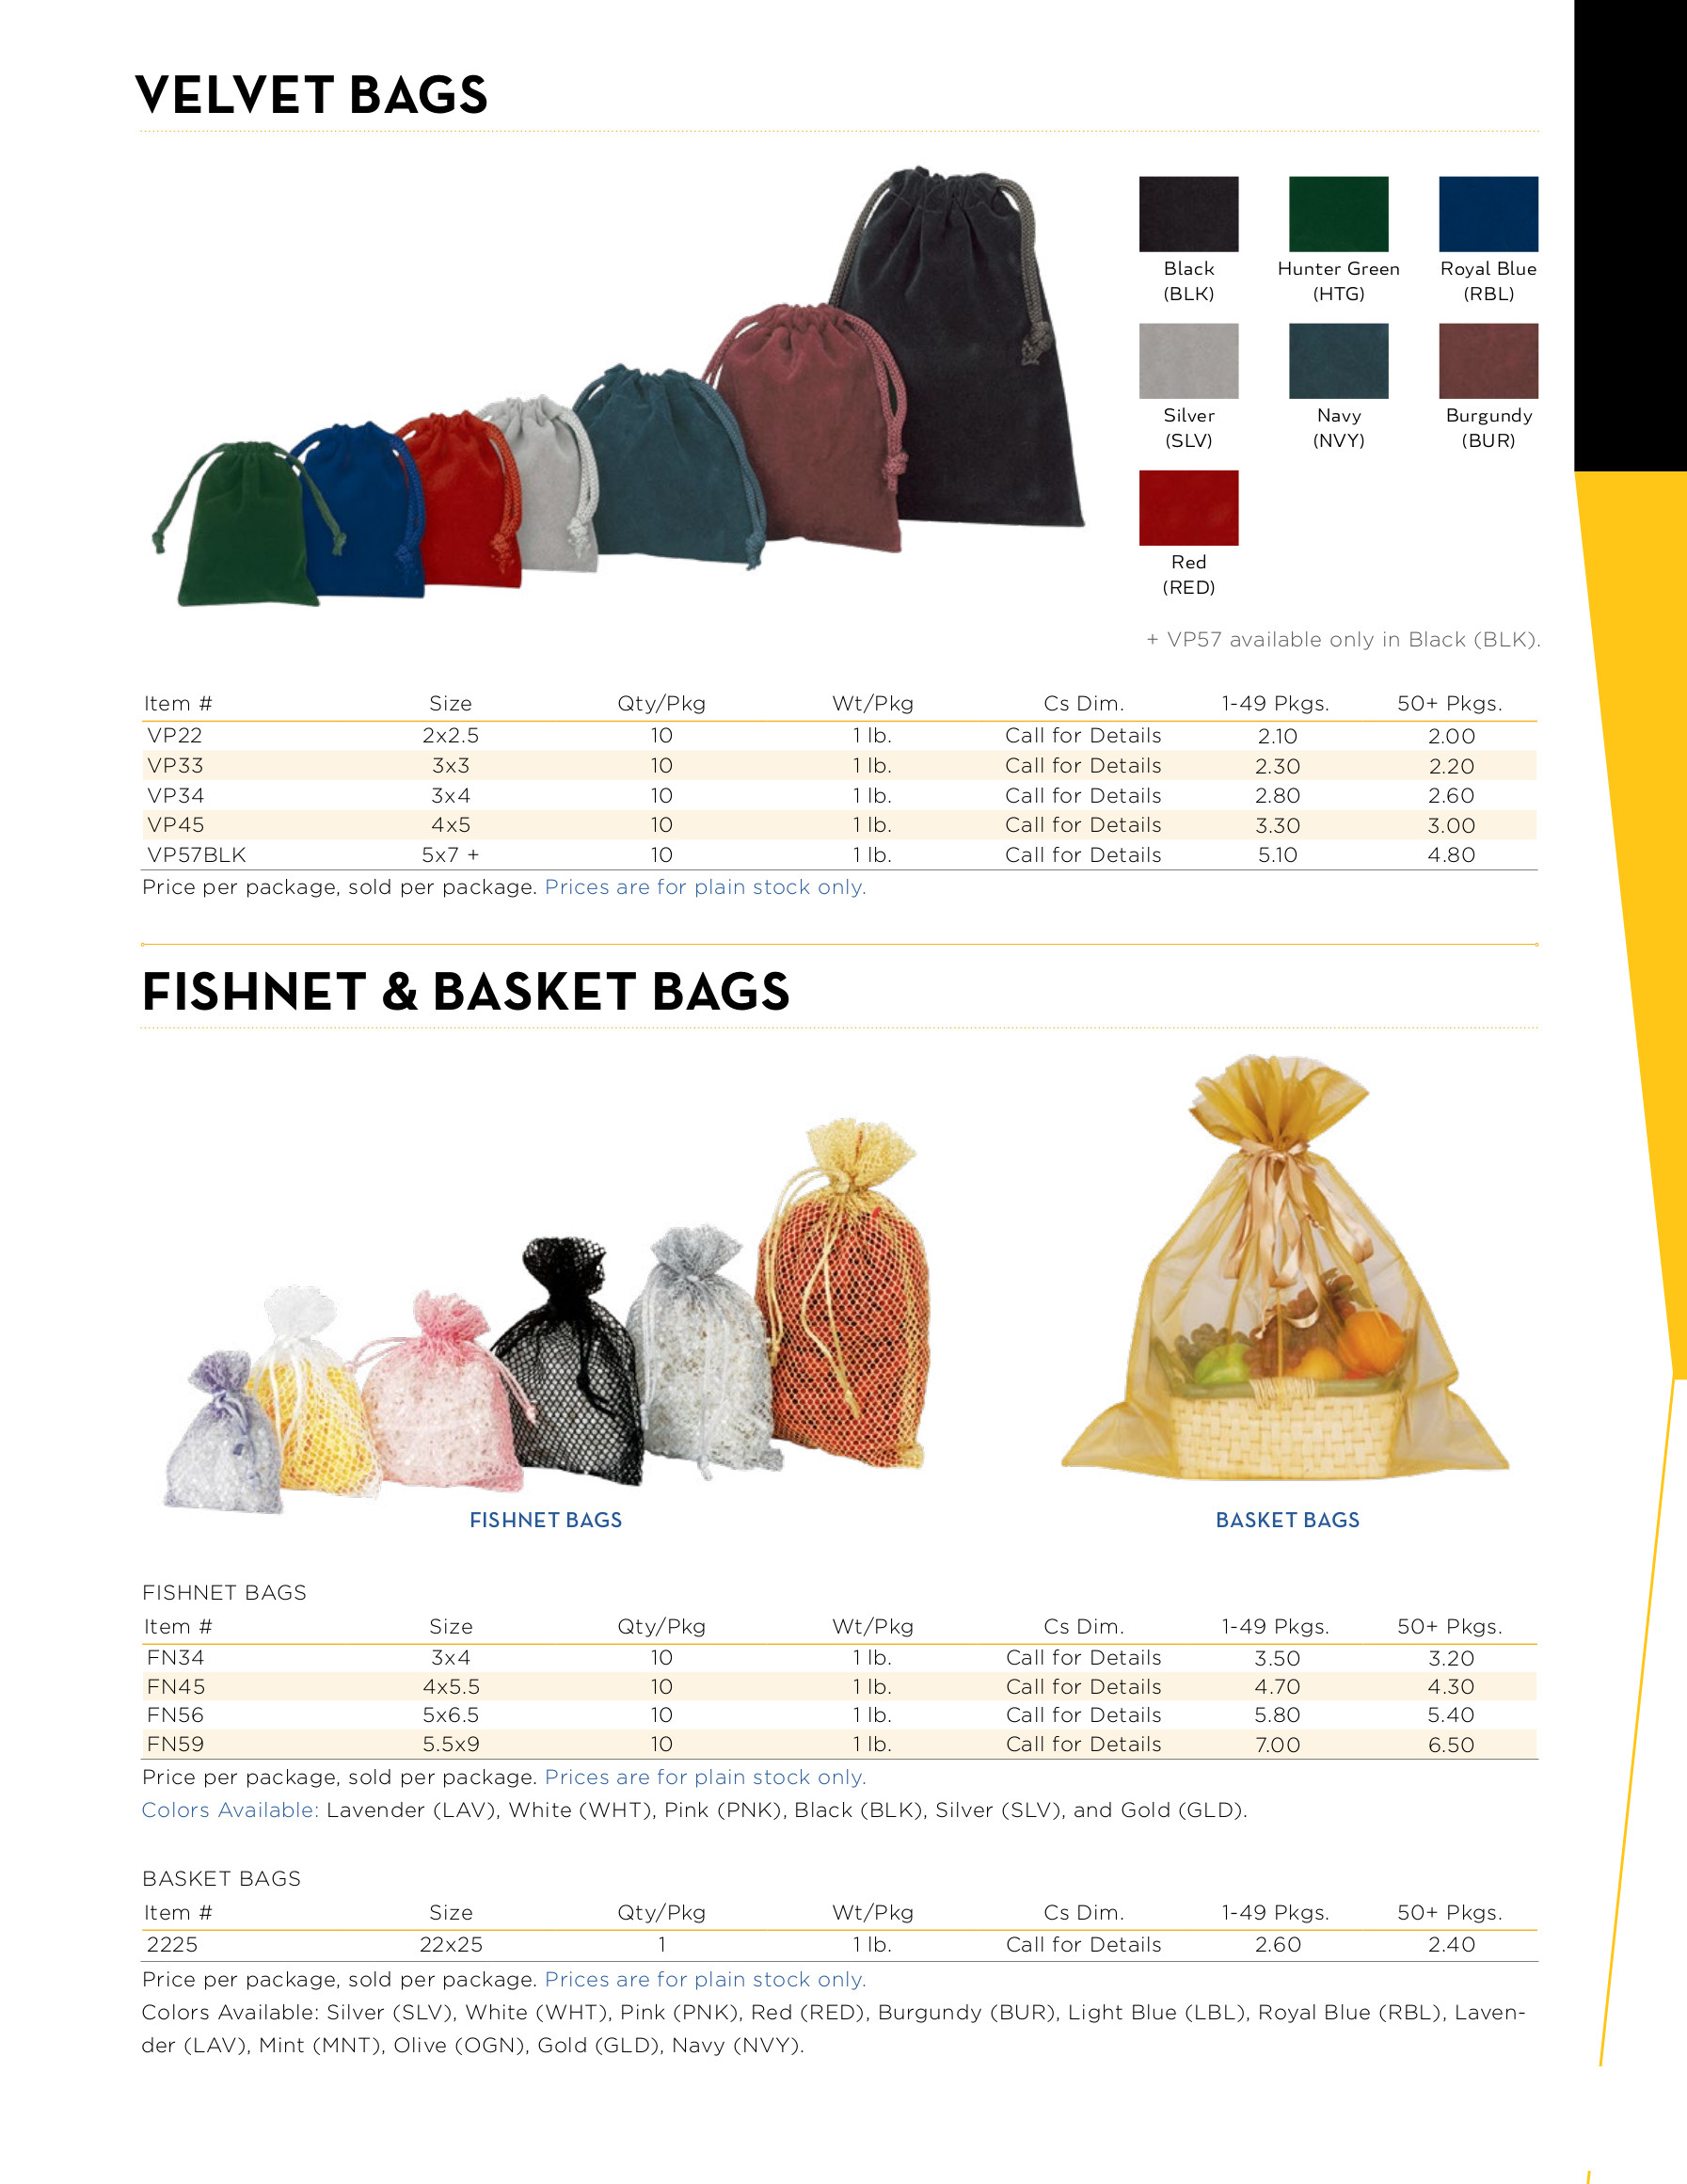 Velvet and Fishnet Bags